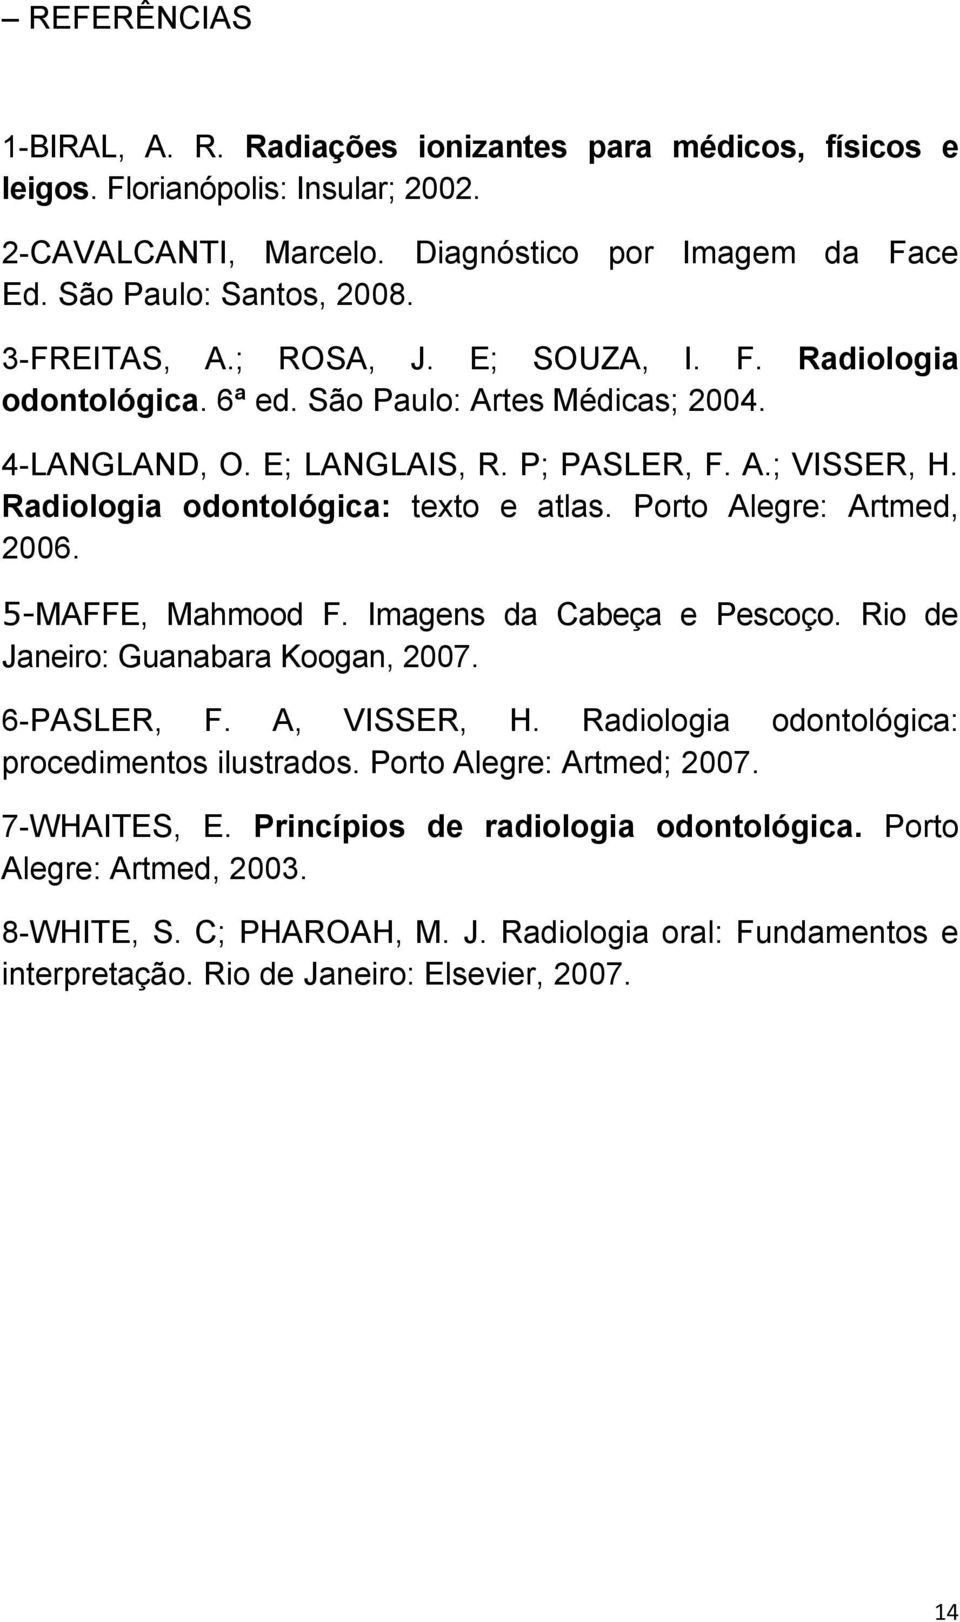 Radiologia odontológica: texto e atlas. Porto Alegre: Artmed, 2006. 5-MAFFE, Mahmood F. Imagens da Cabeça e Pescoço. Rio de Janeiro: Guanabara Koogan, 2007. 6-PASLER, F. A, VISSER, H.